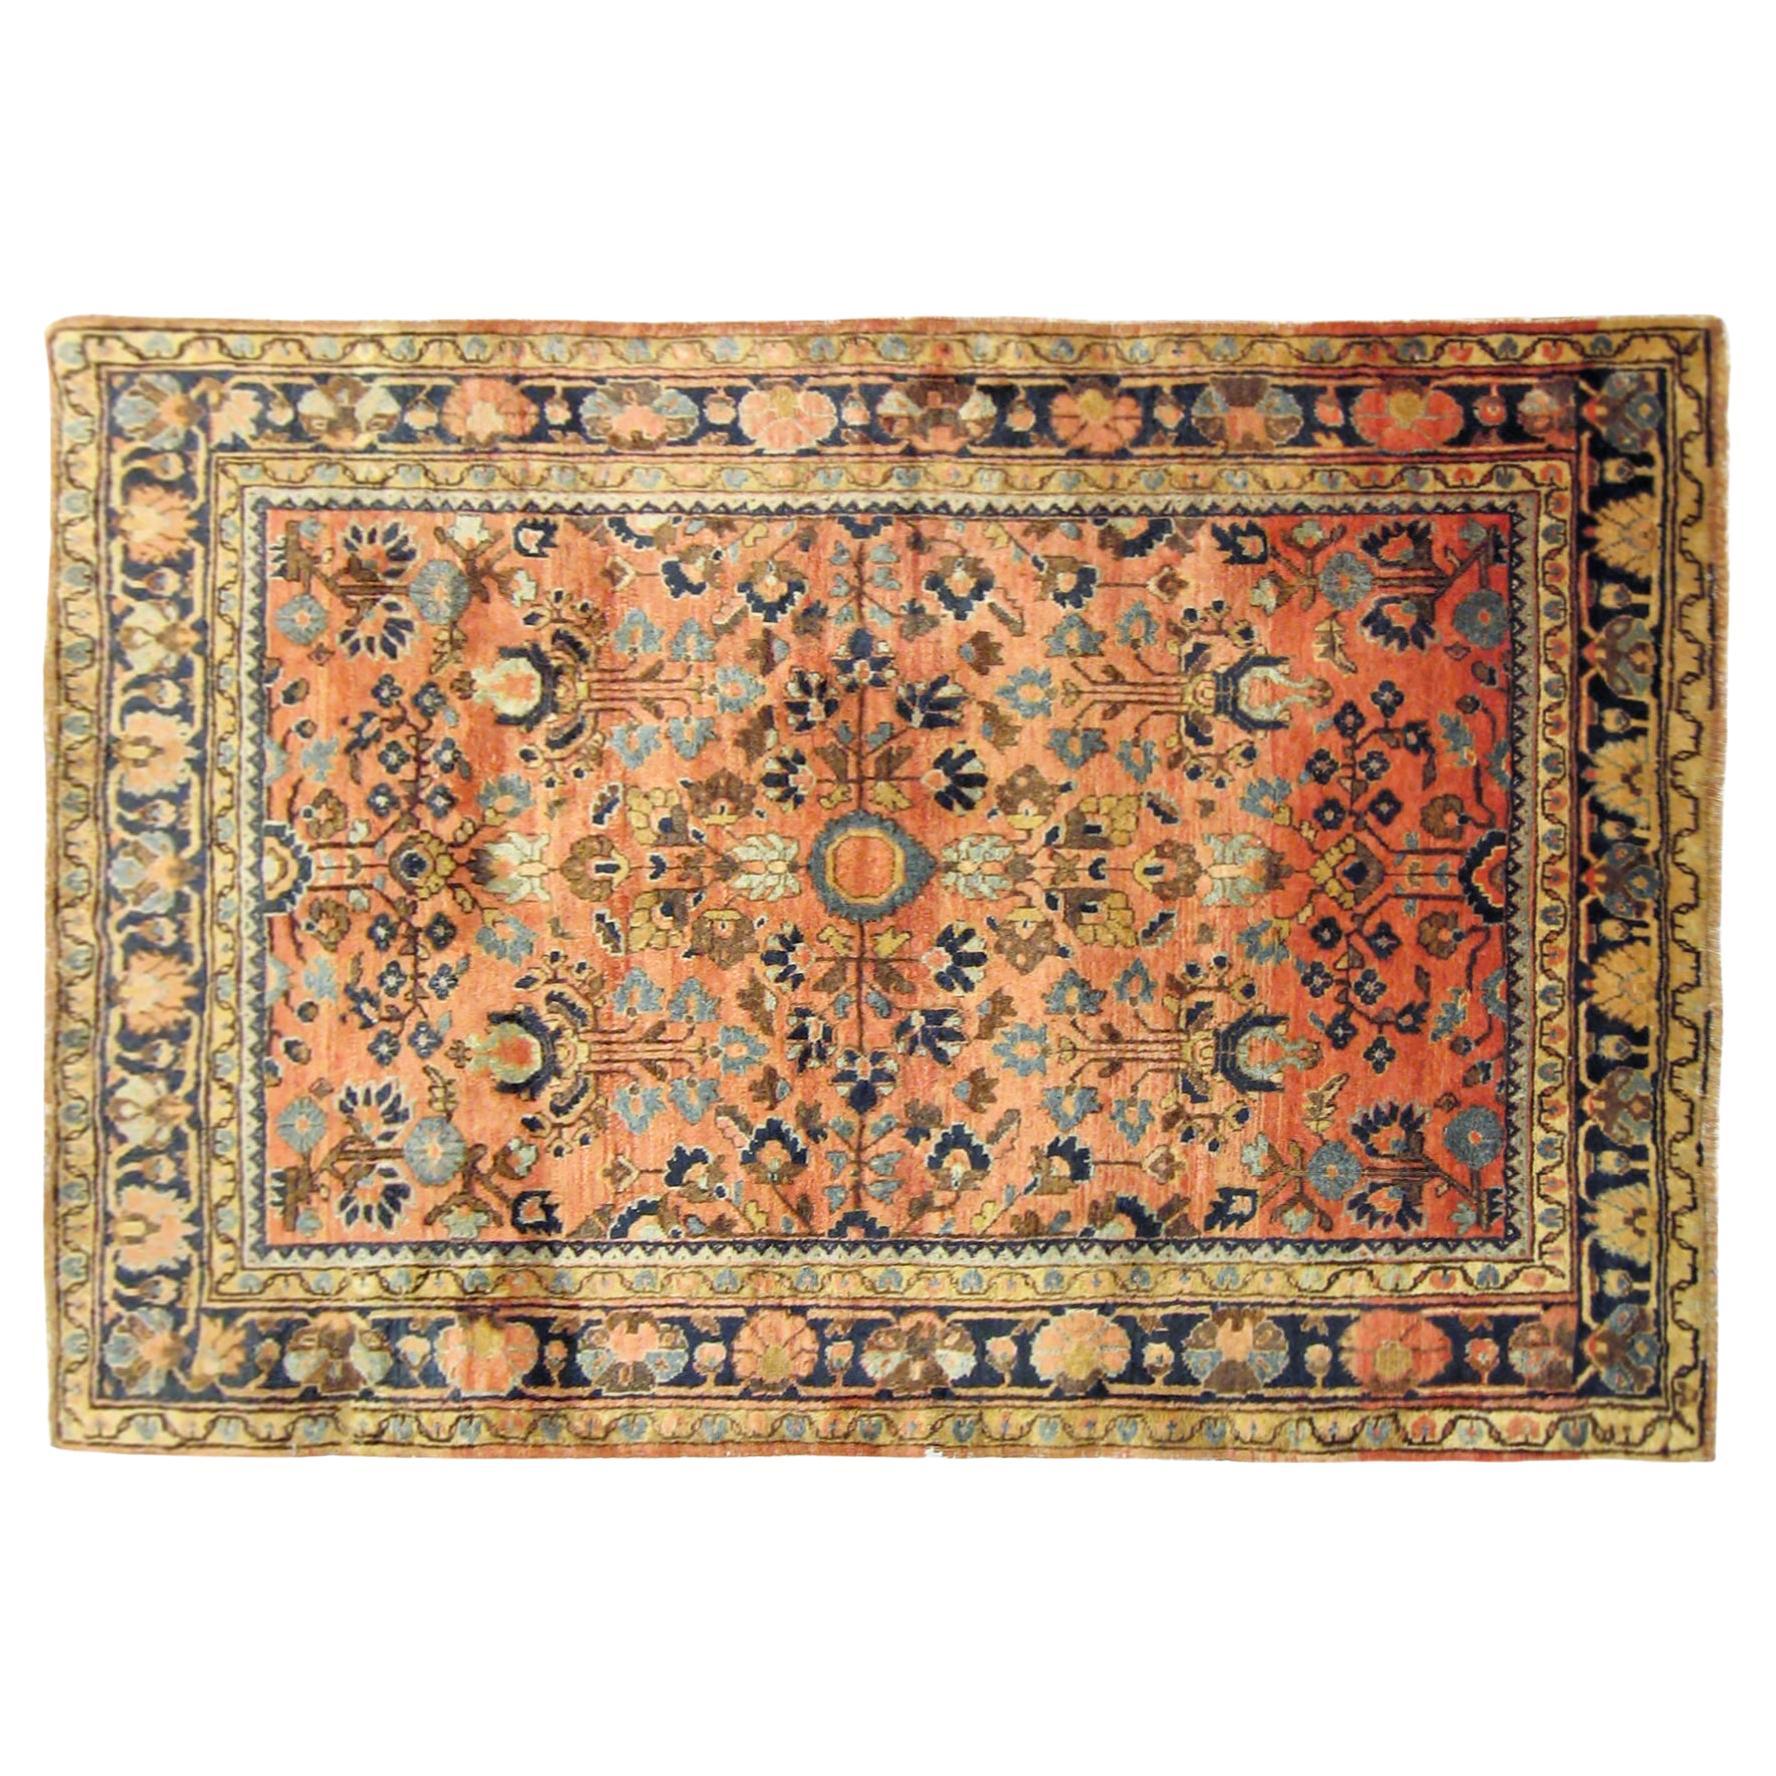 Tapis persan ancien de style Sarouk oriental, de petite taille, avec un motif floral complexe